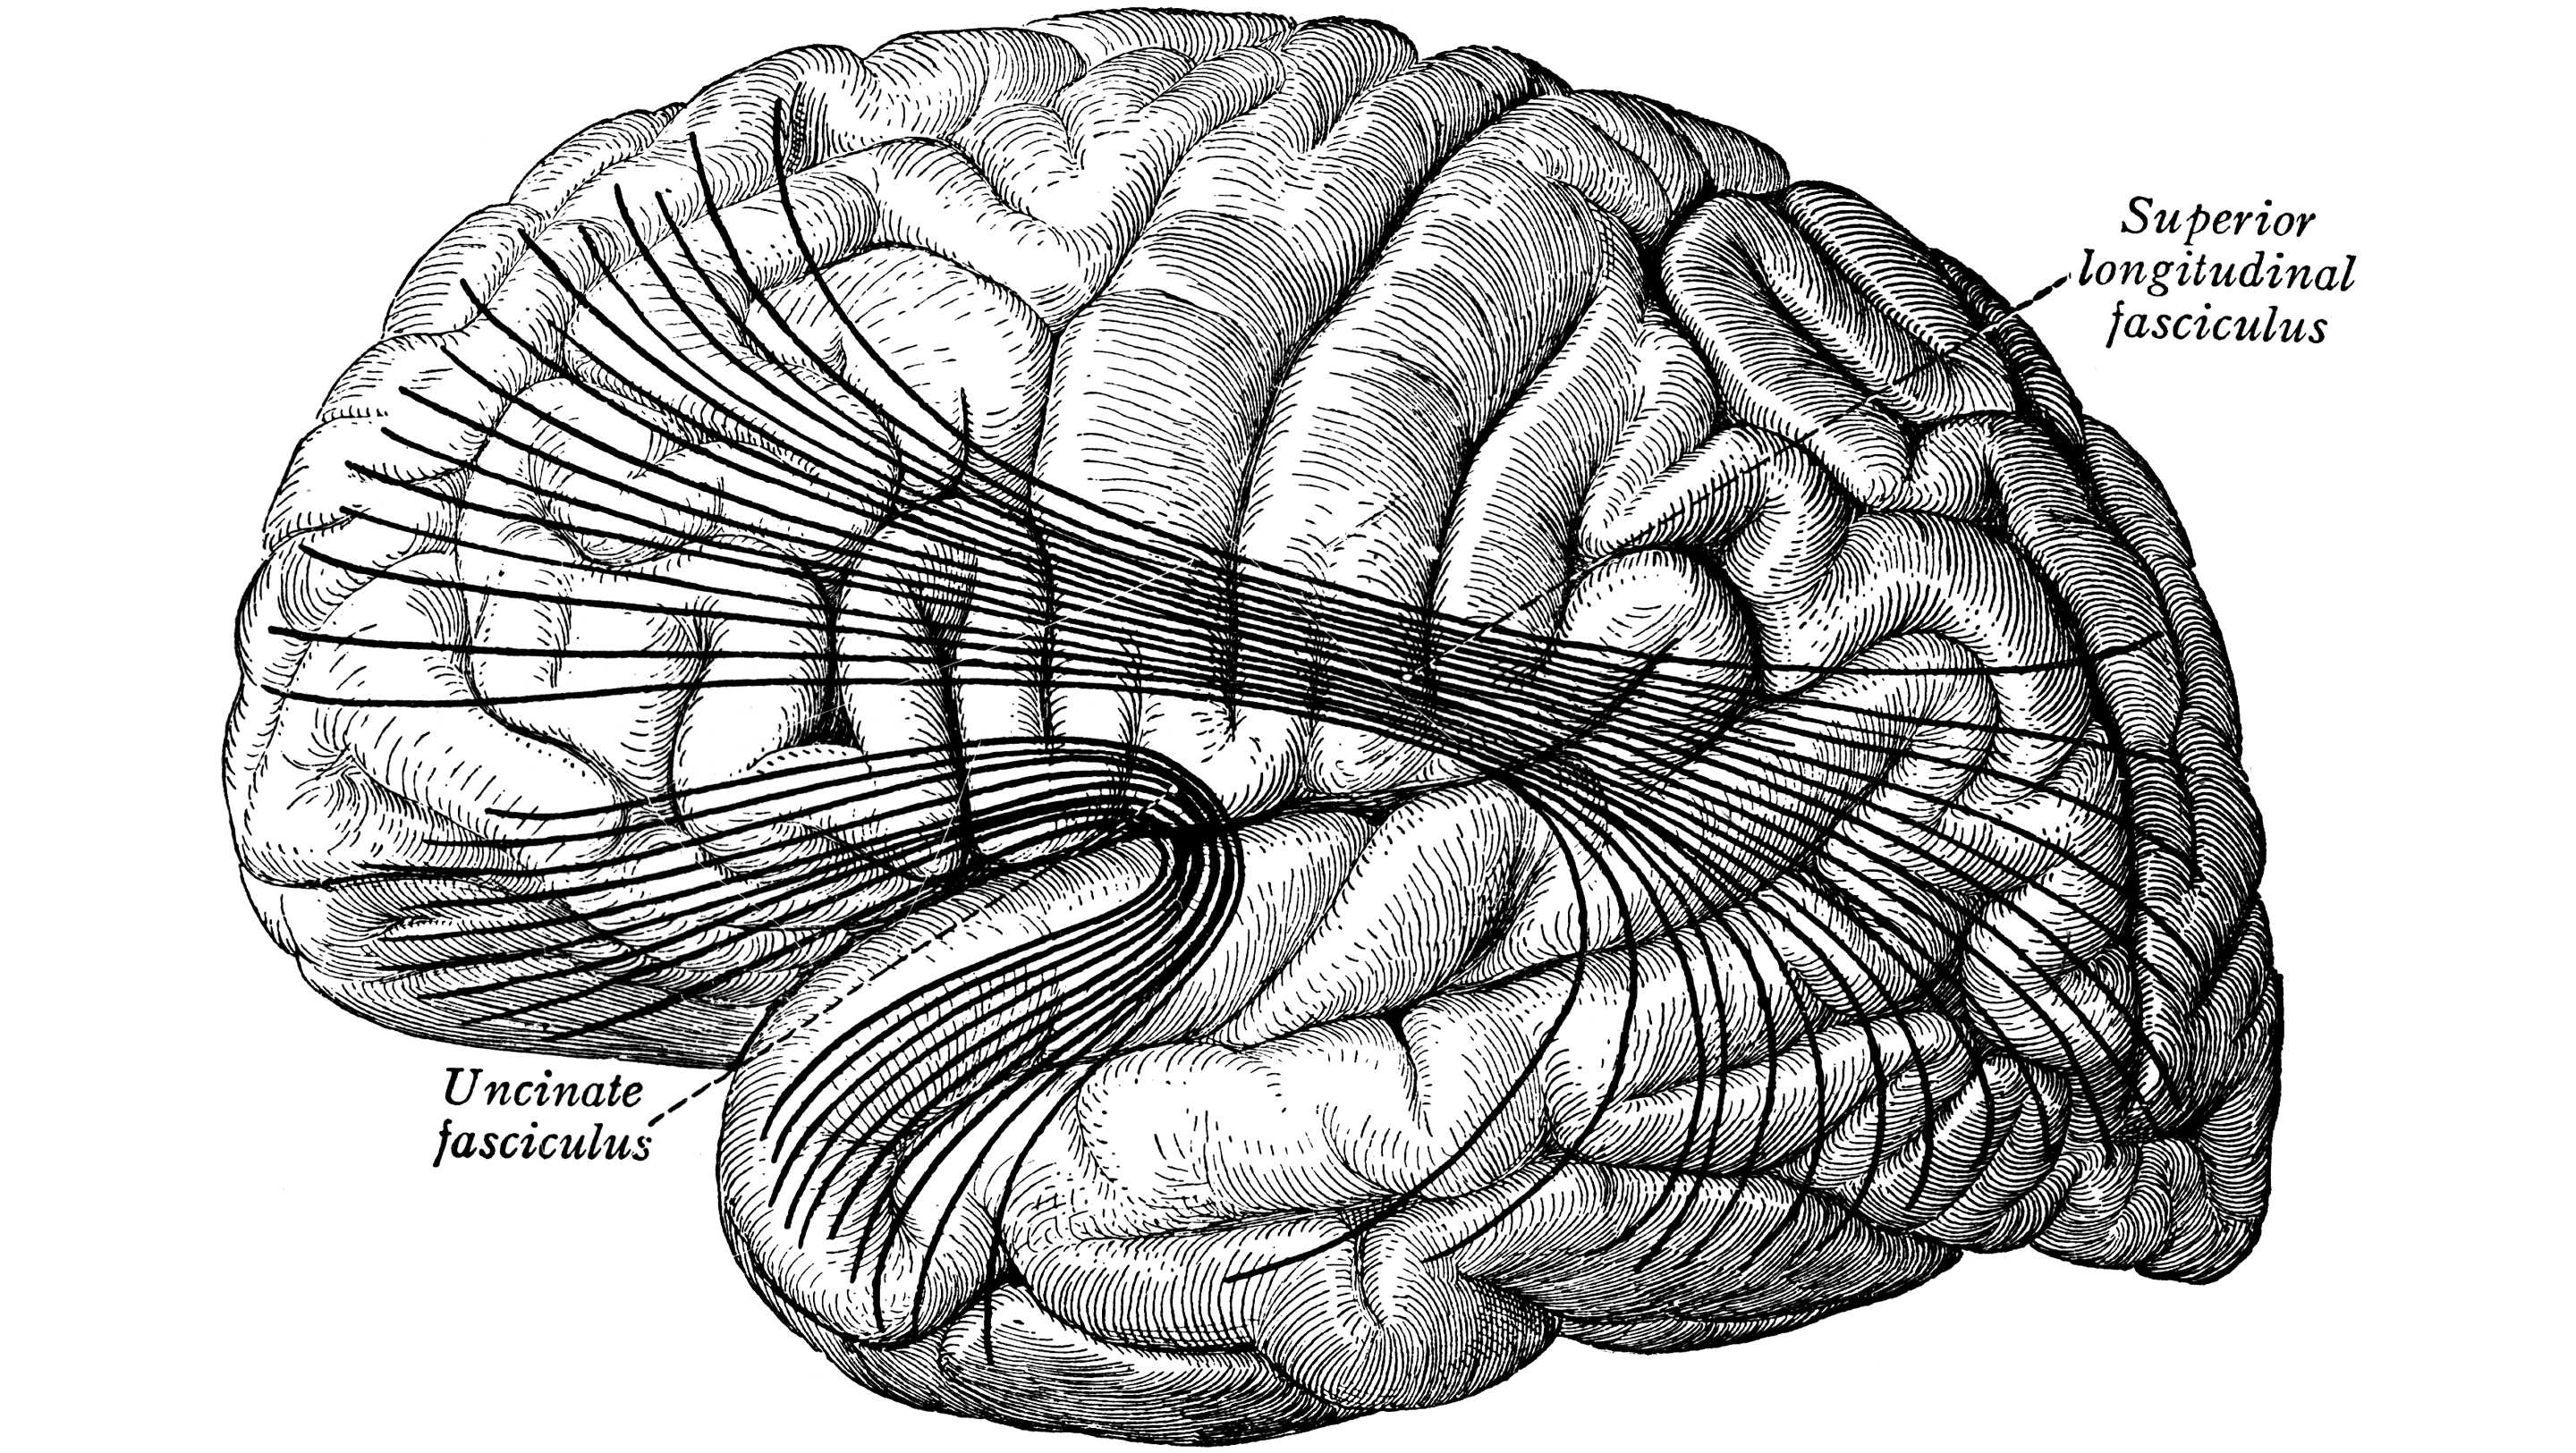 Как музыка формирует когнитивный резерв мозга